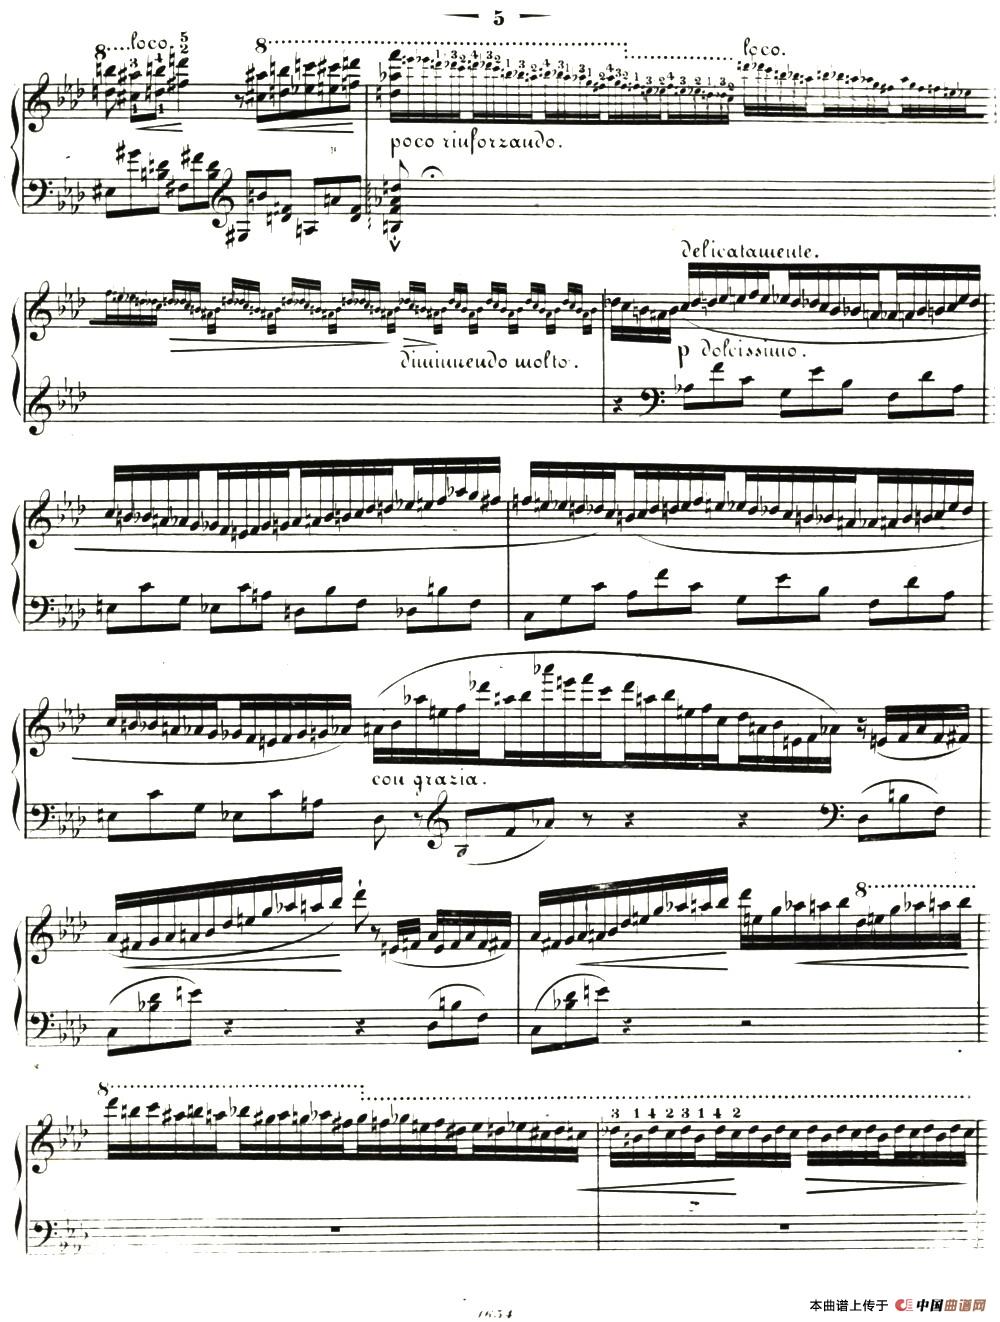 李斯特音乐会练习曲 S144（2 轻盈 f小调 S144 La leggierezza F minor）(1)_016.jpg